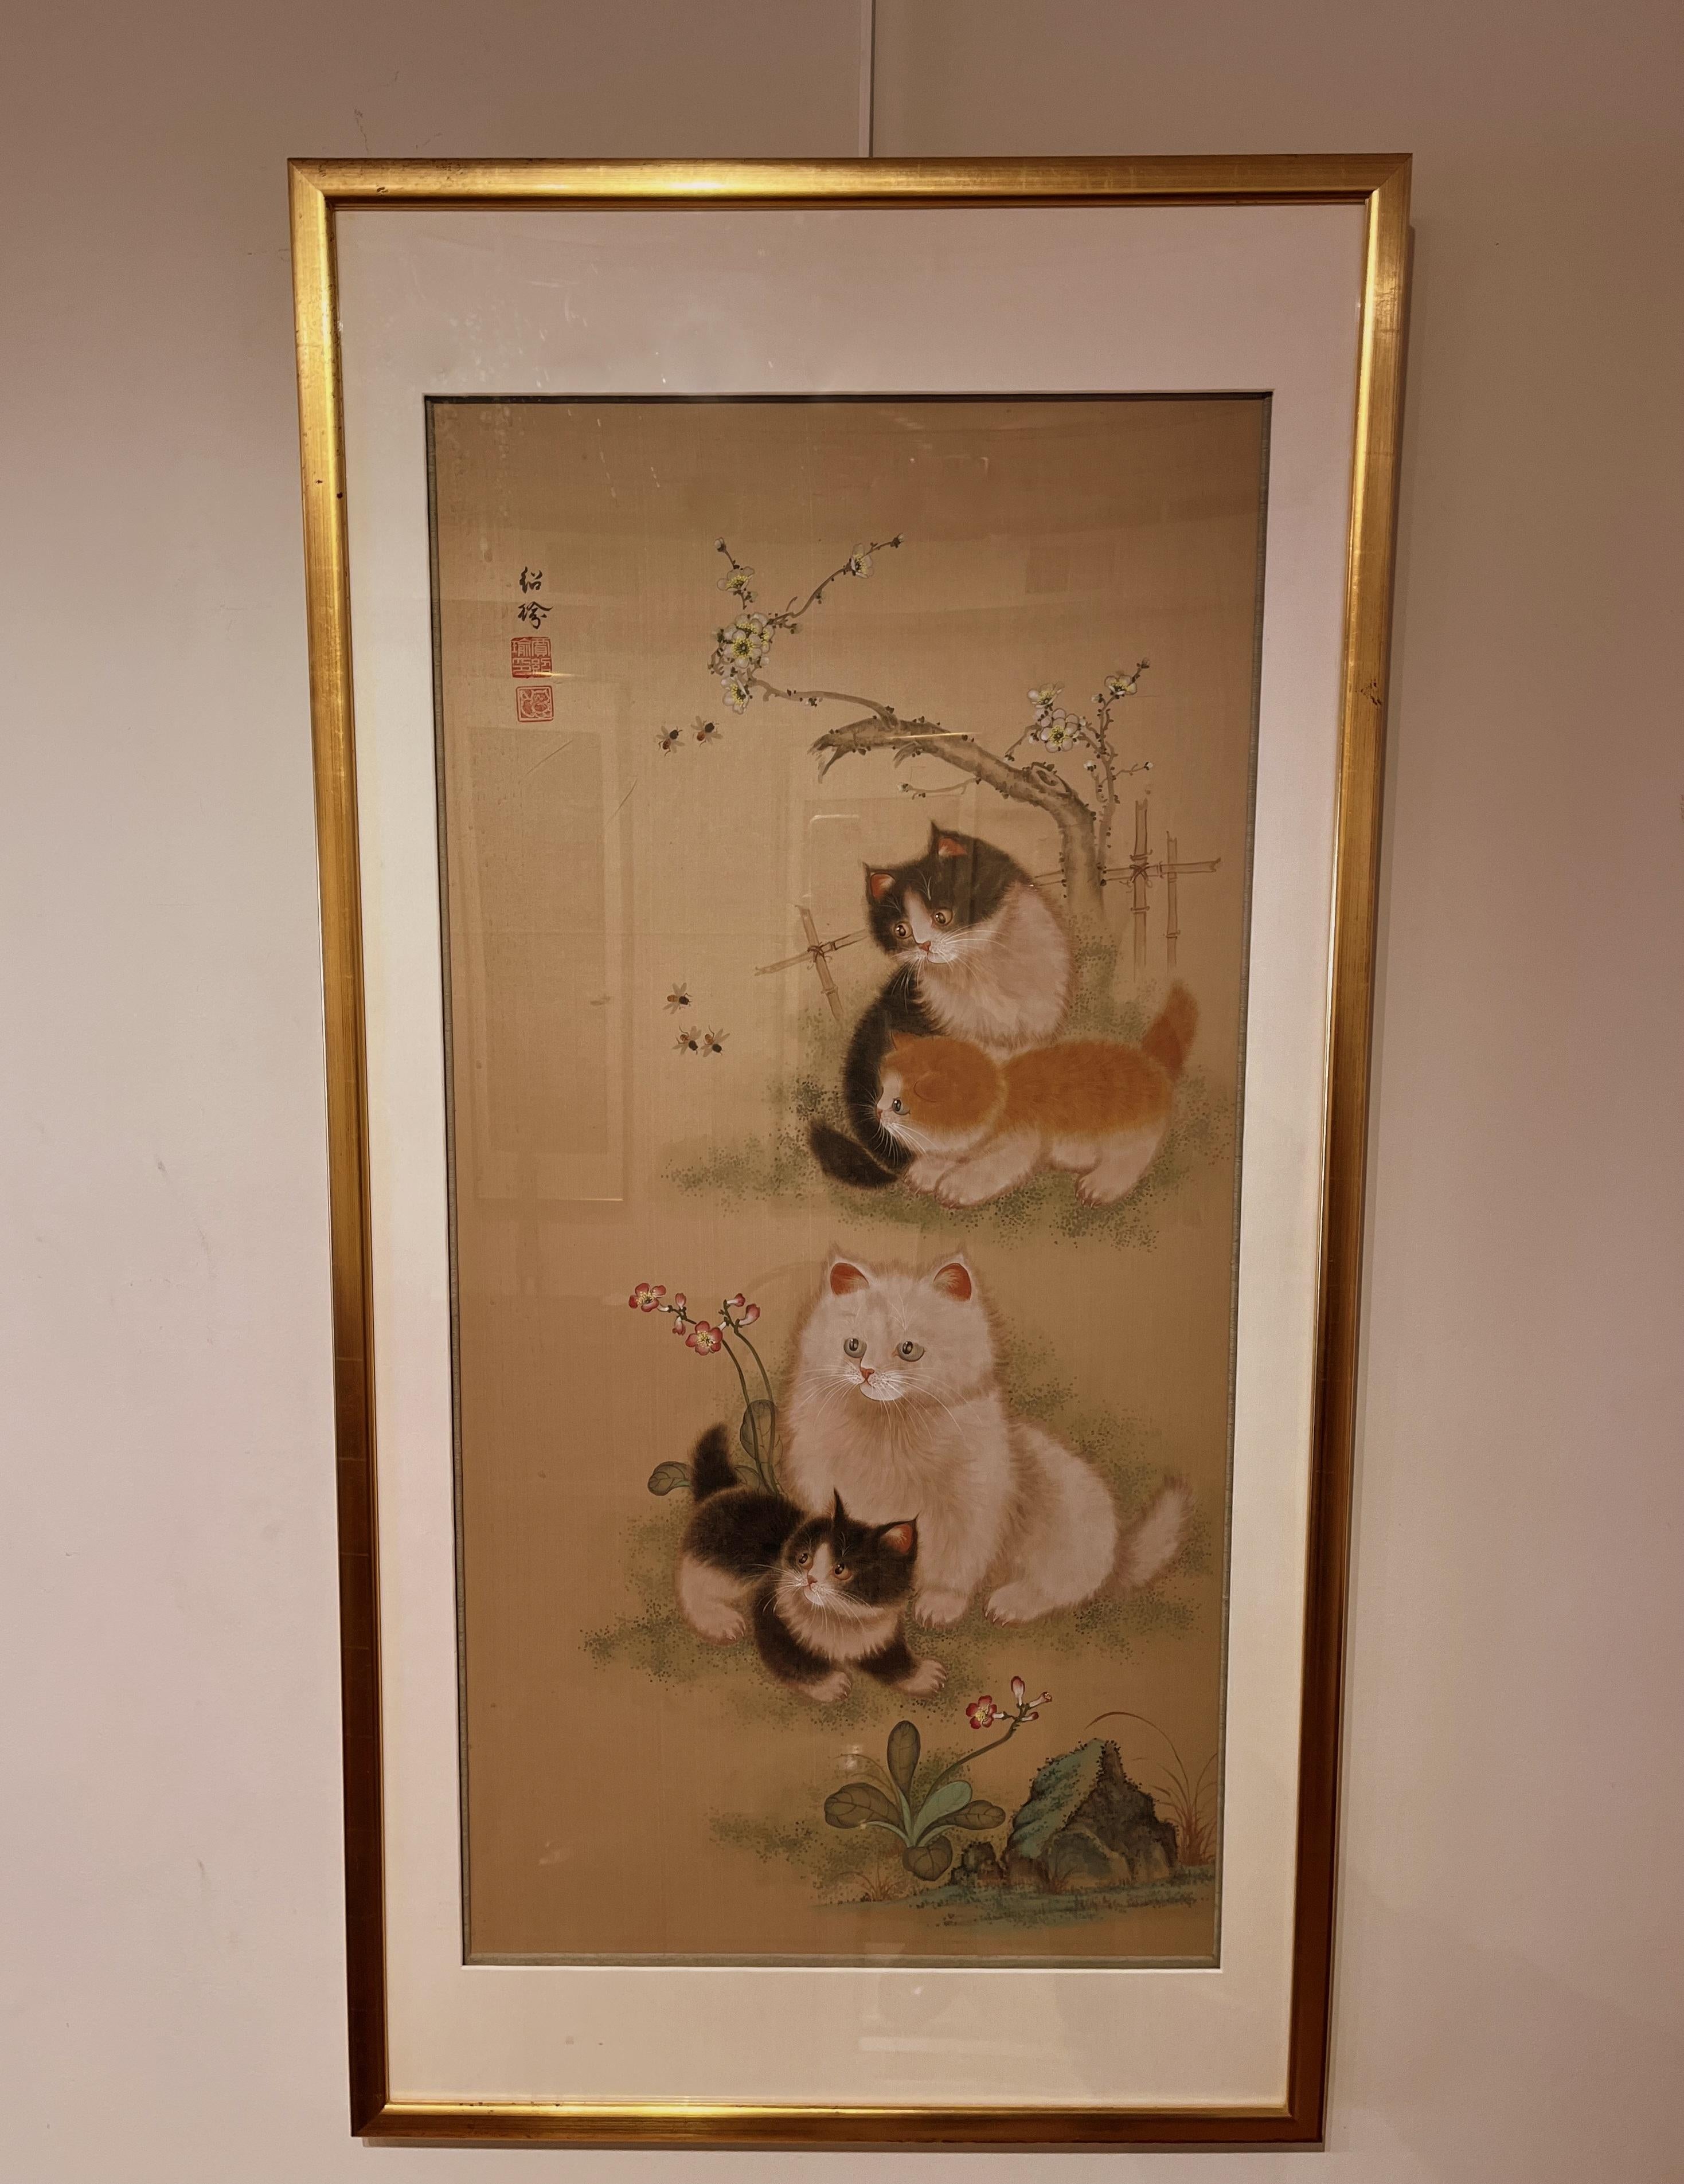 Feine elegante japanische Pinsel Malerei von vier Kätzchen mit Bienen und Blumen, neugierig und liebenswert Kätzchen beobachten Bienen.
Sehr fein gemalt. Ca. 1900 , Tinte und Farbe auf Seide. Konservierung gerahmt
Gesamtgröße mit Rahmen:  25